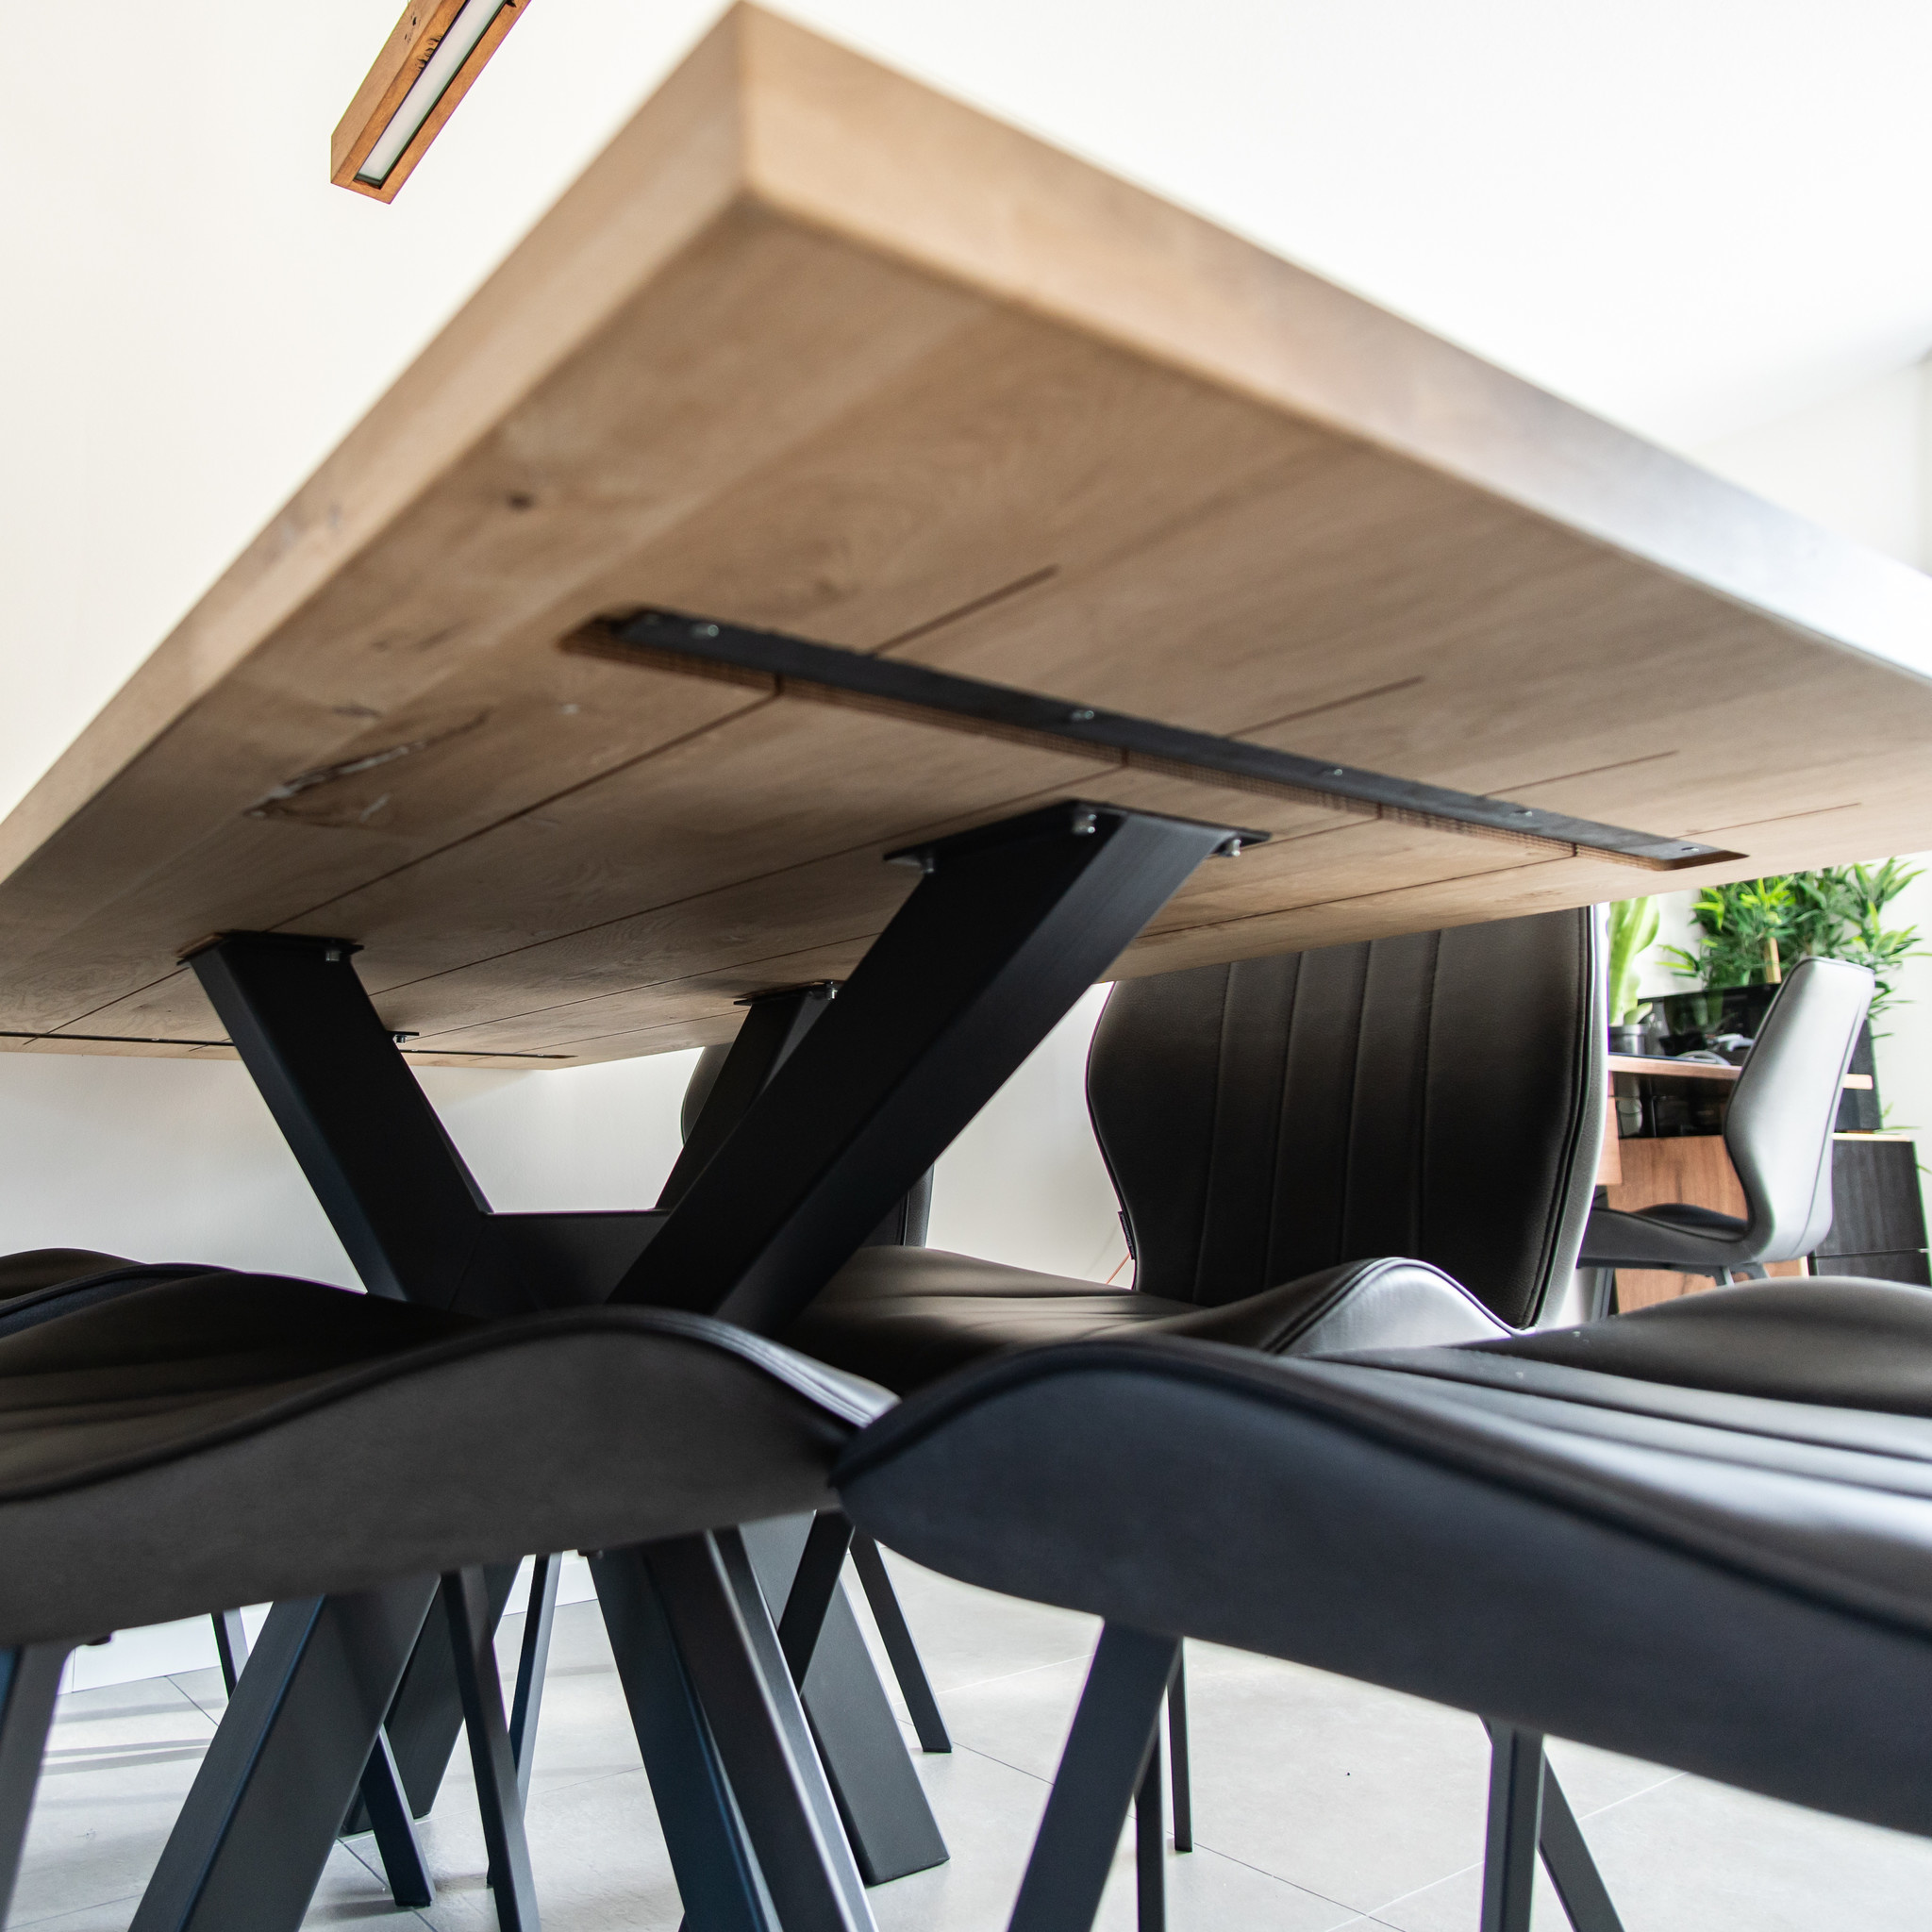  Tischplatte Eiche nach Maß - 5 cm dick (2-lagig) - Eichenholz rustikal - Eiche Tischplatte massiv - verleimt & künstlich getrocknet (HF 8-12%) - 50-120x50-300 cm